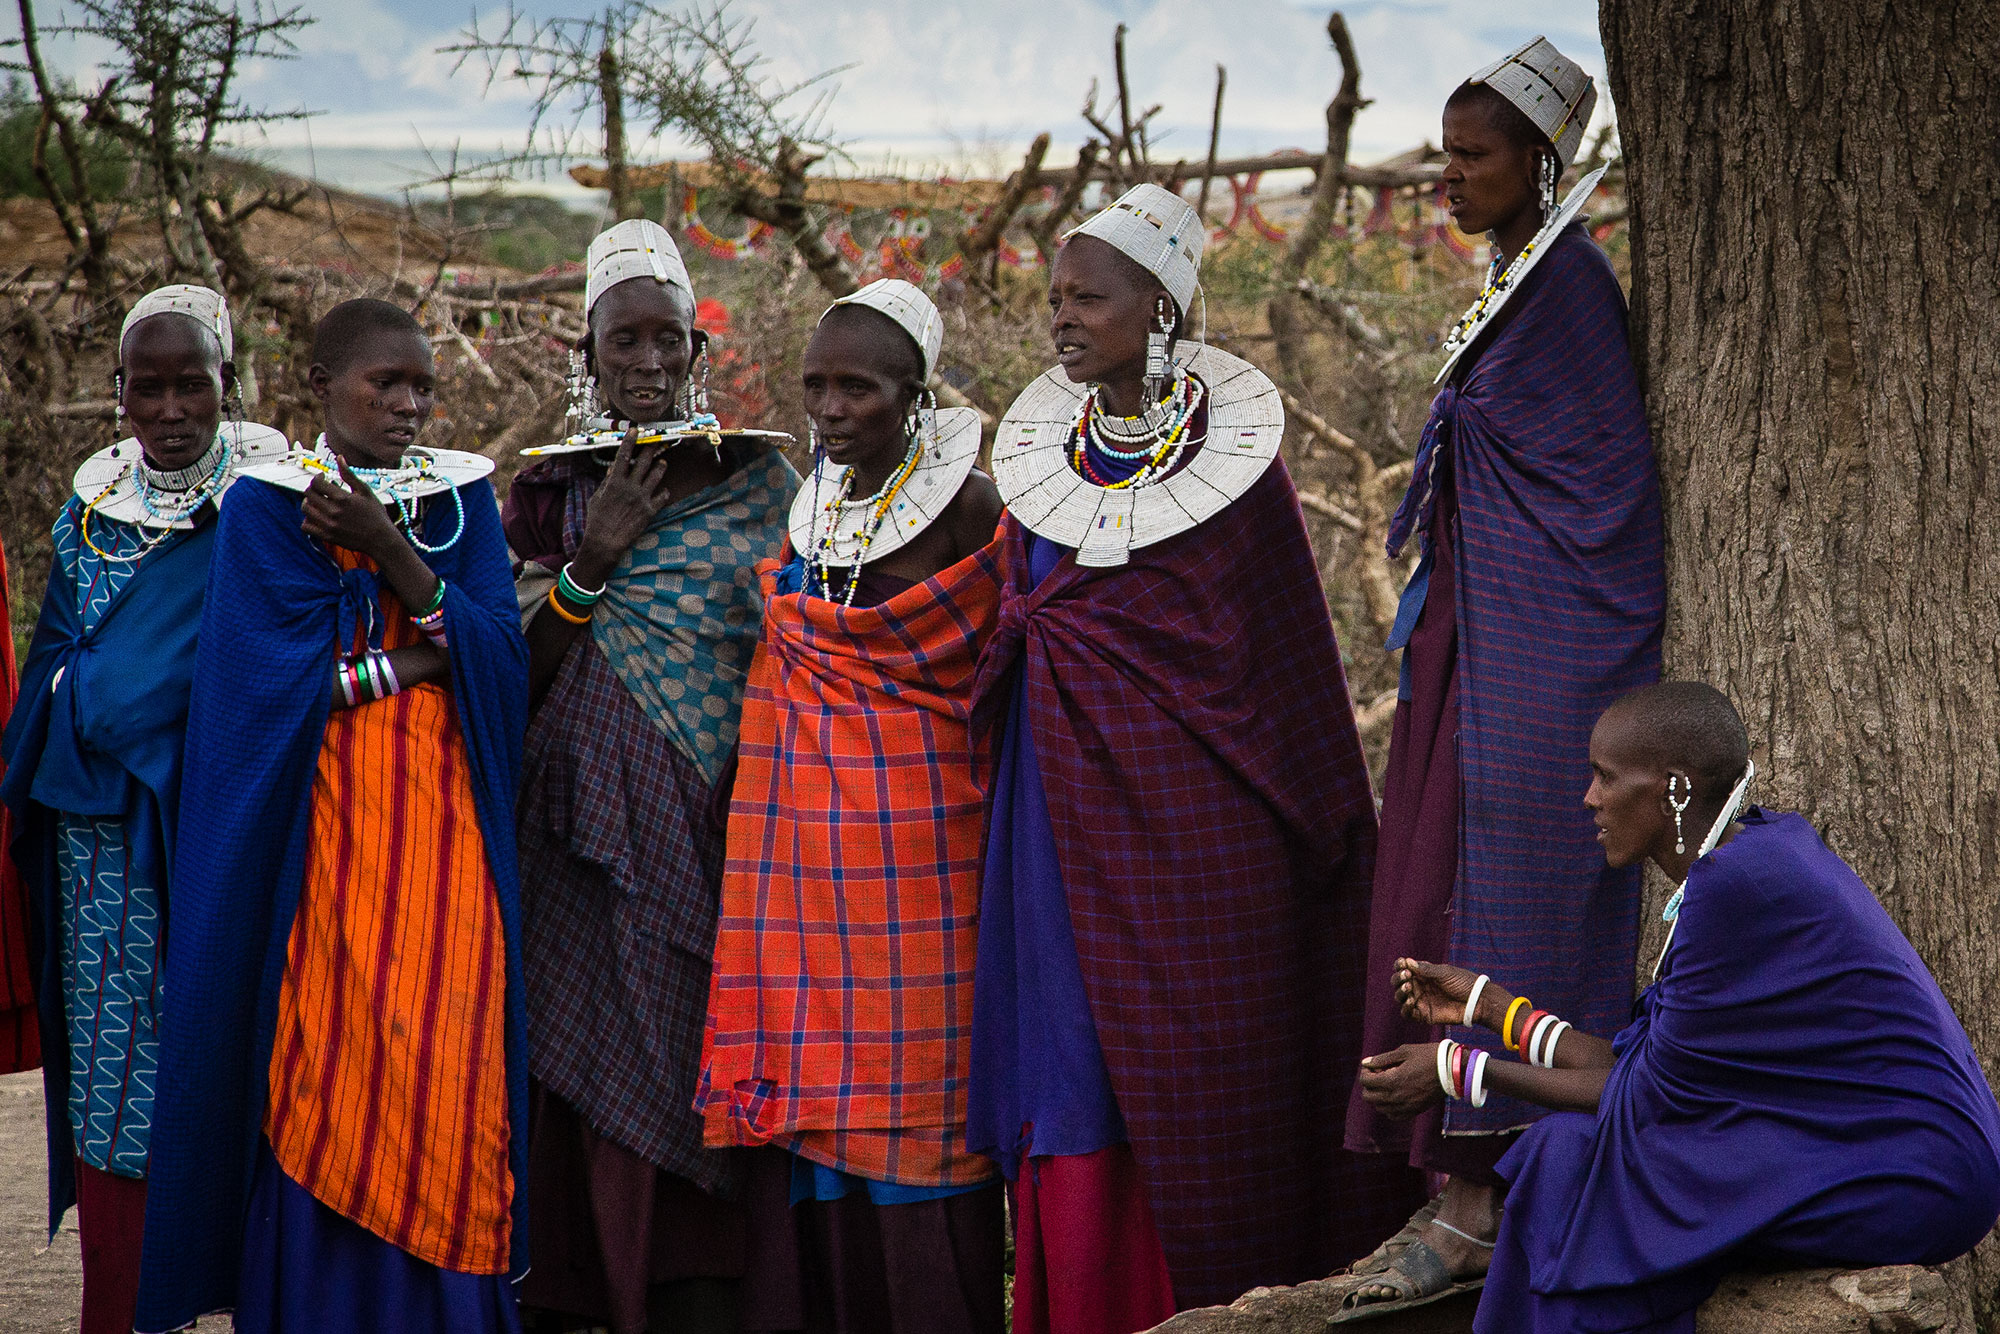 Meet the Maasai Neighbours